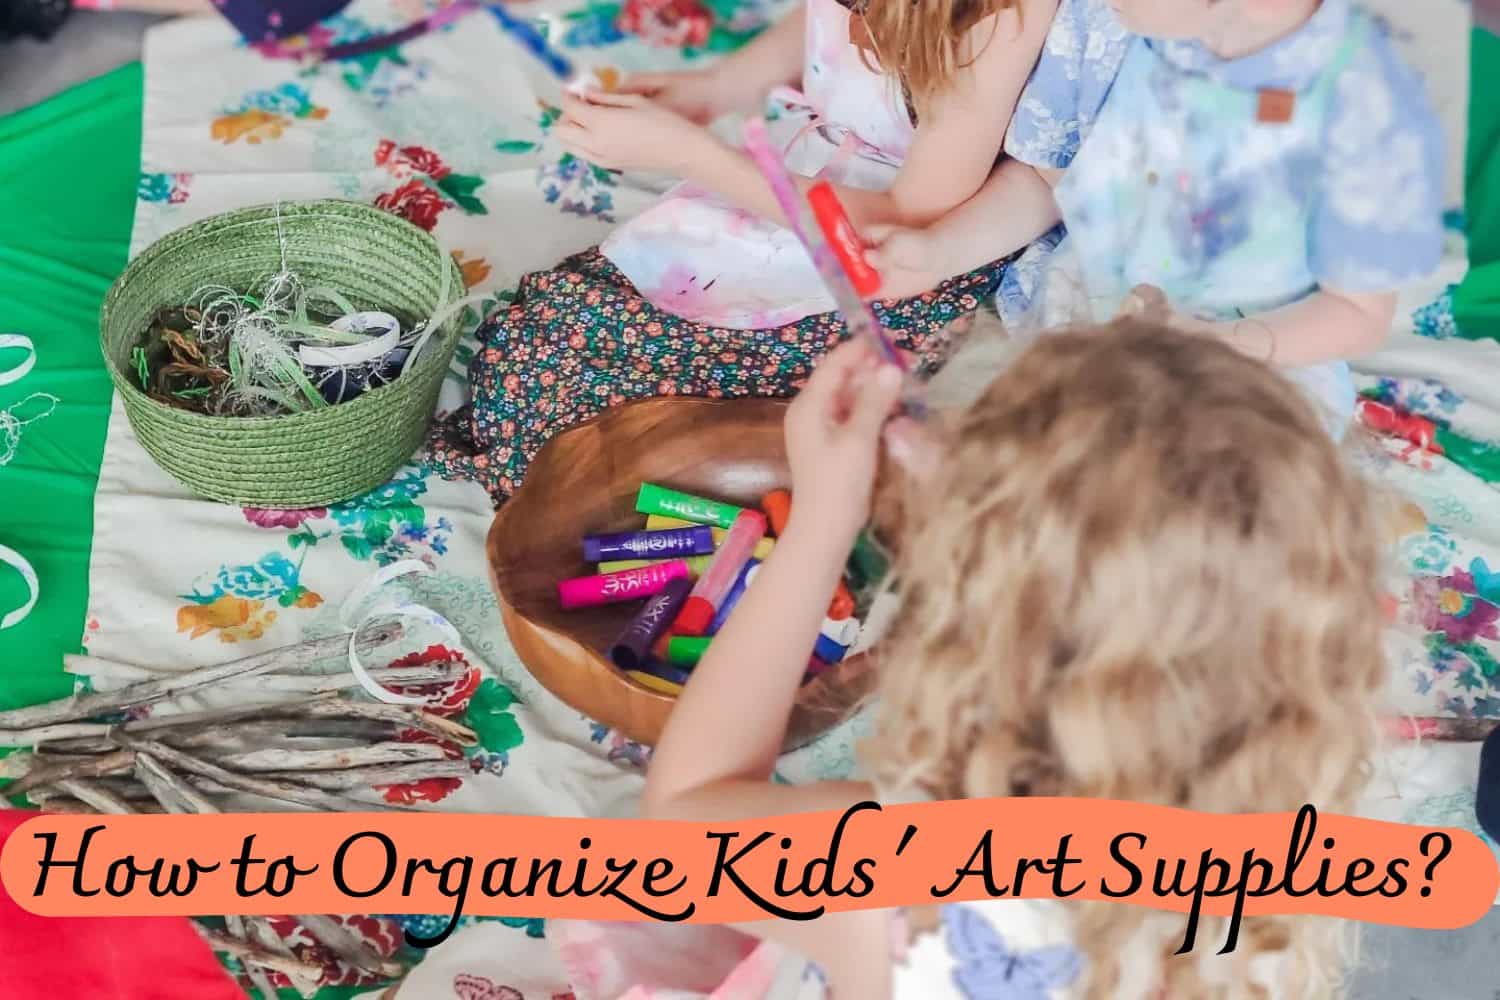 How to Organize Kids' Art Supplies?